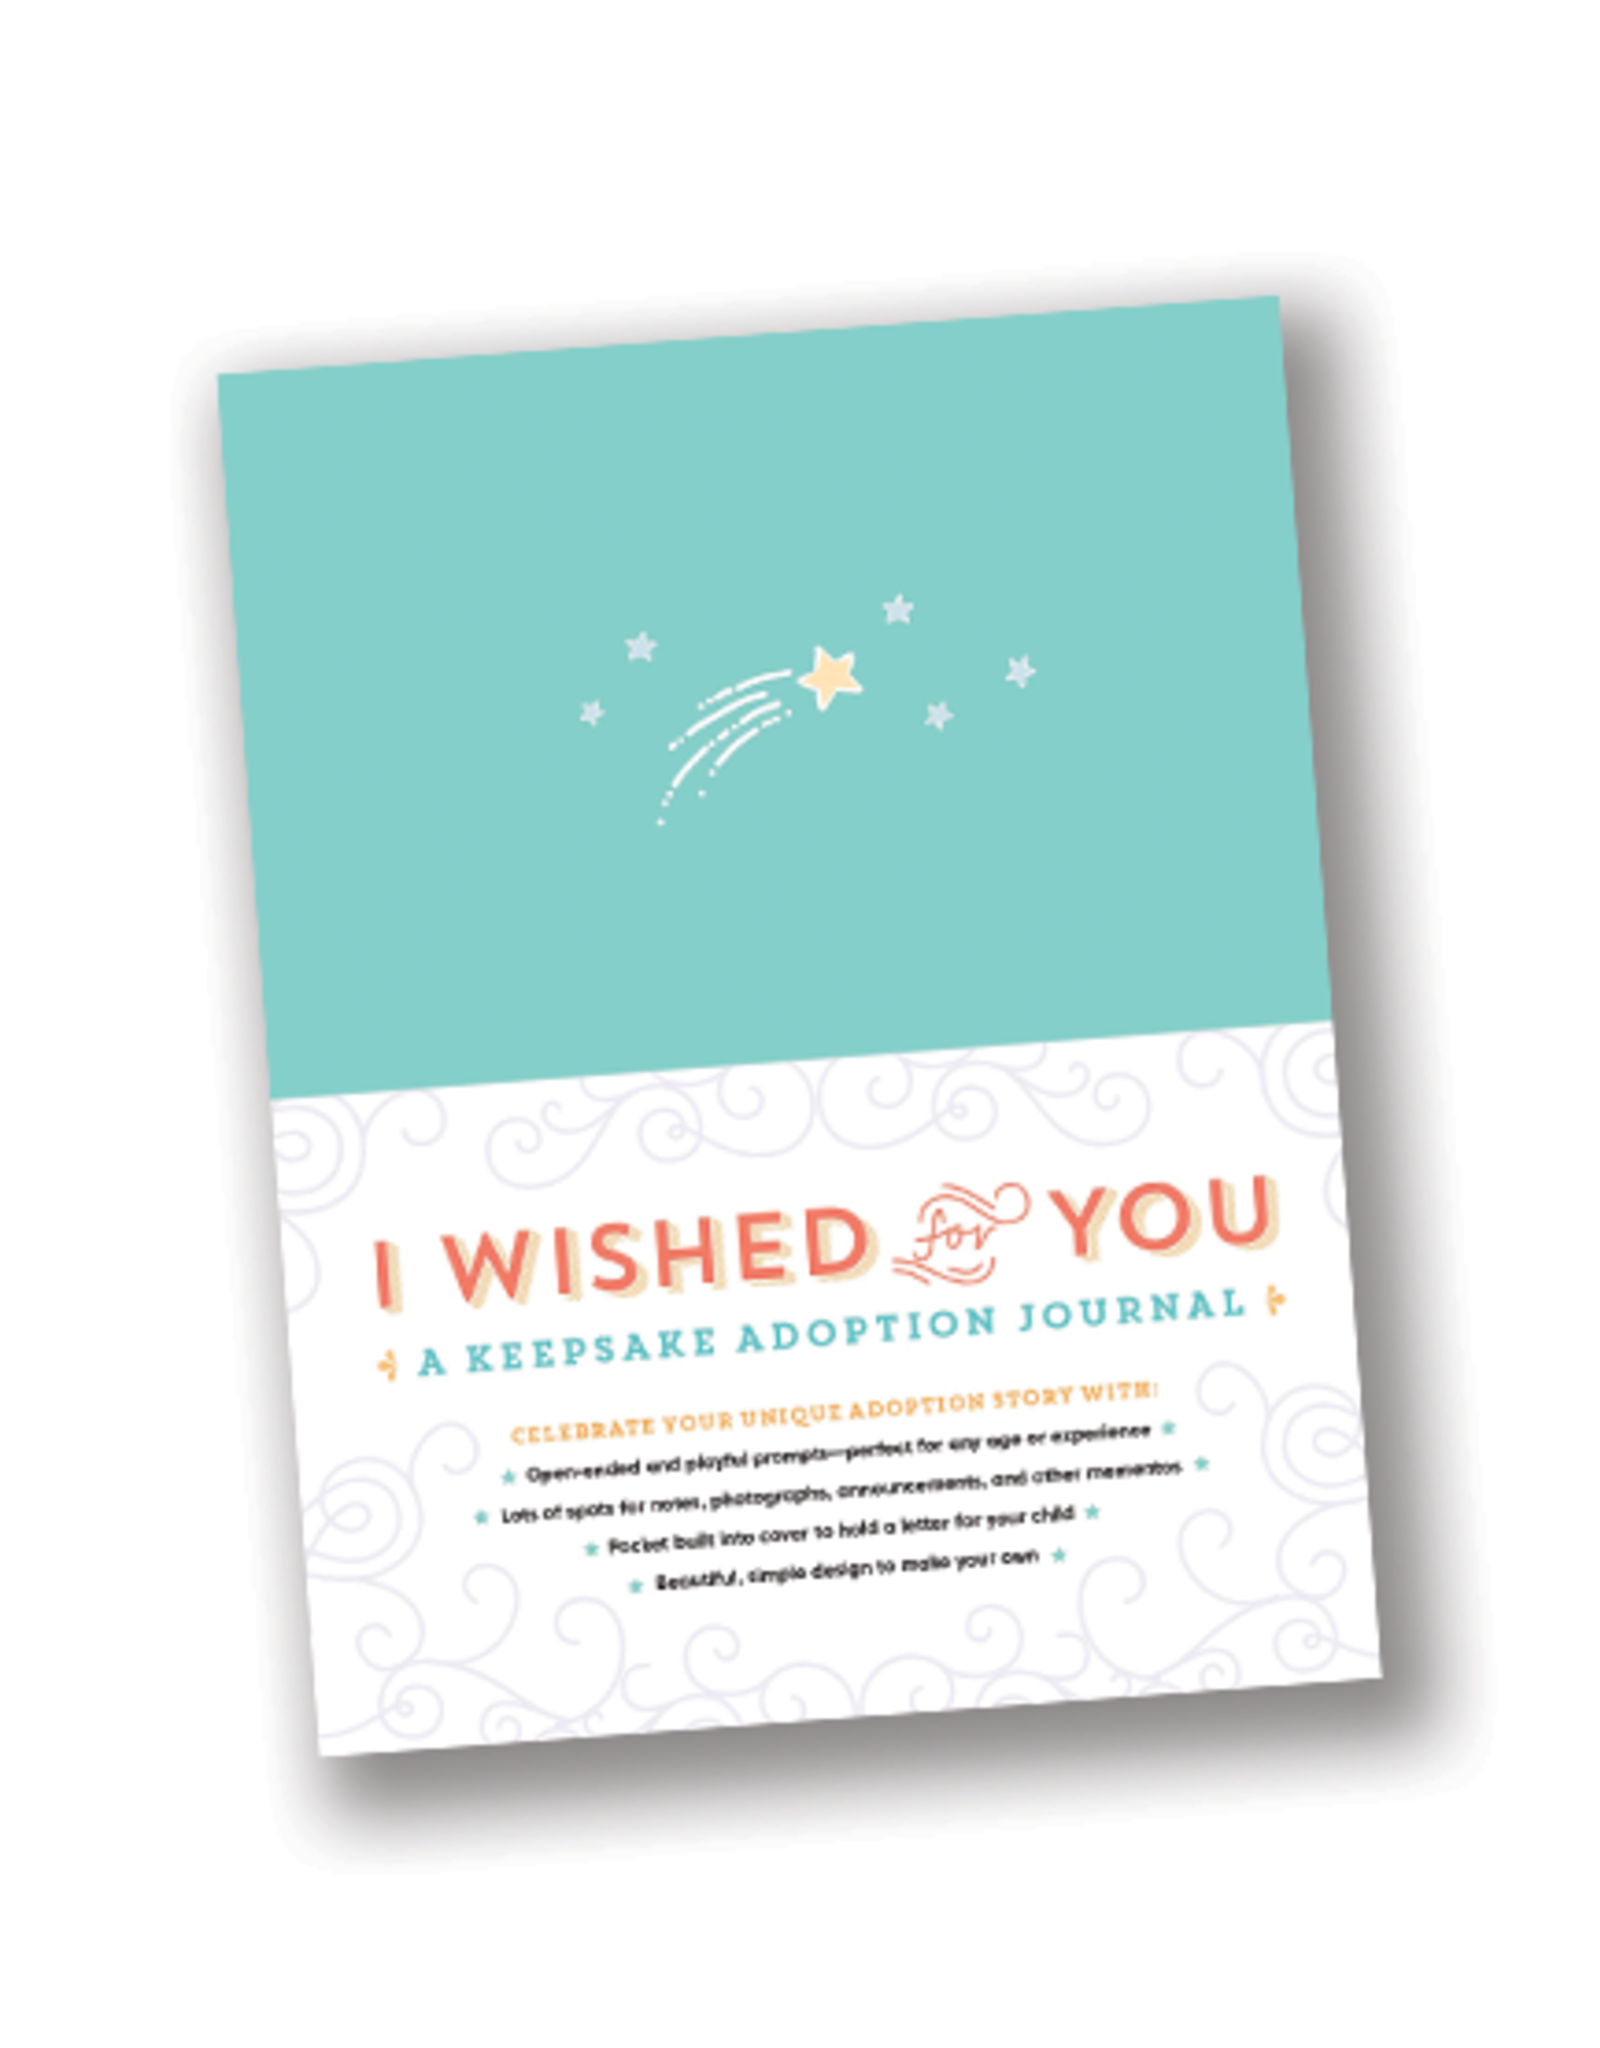 I Wished For You:  A Keepsake Adoption Journal